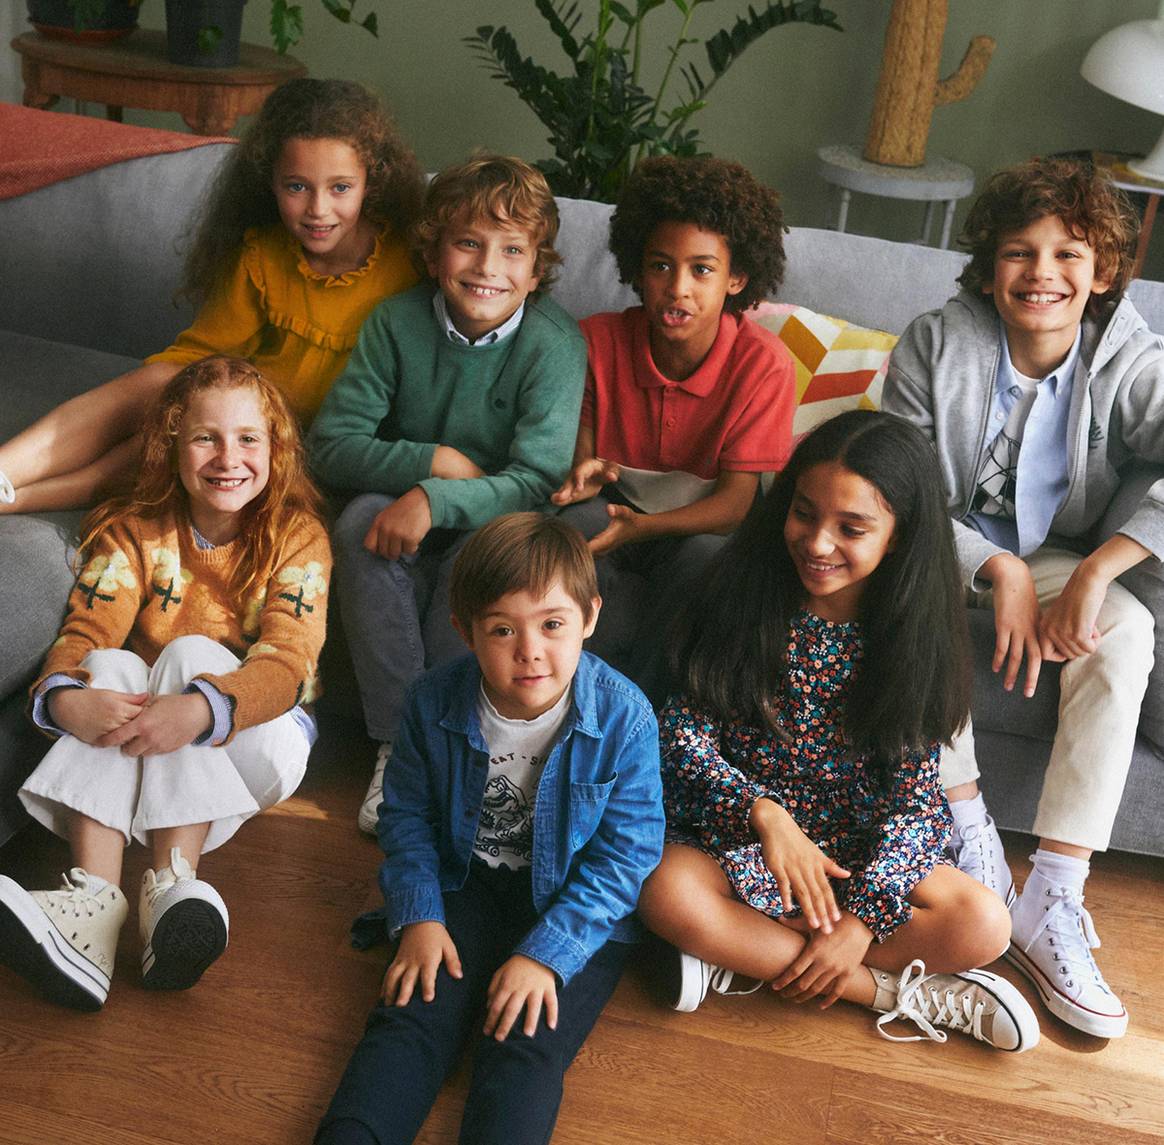 Fotografía de campaña de la nueva marca “Springfield Kids” de Tendam.